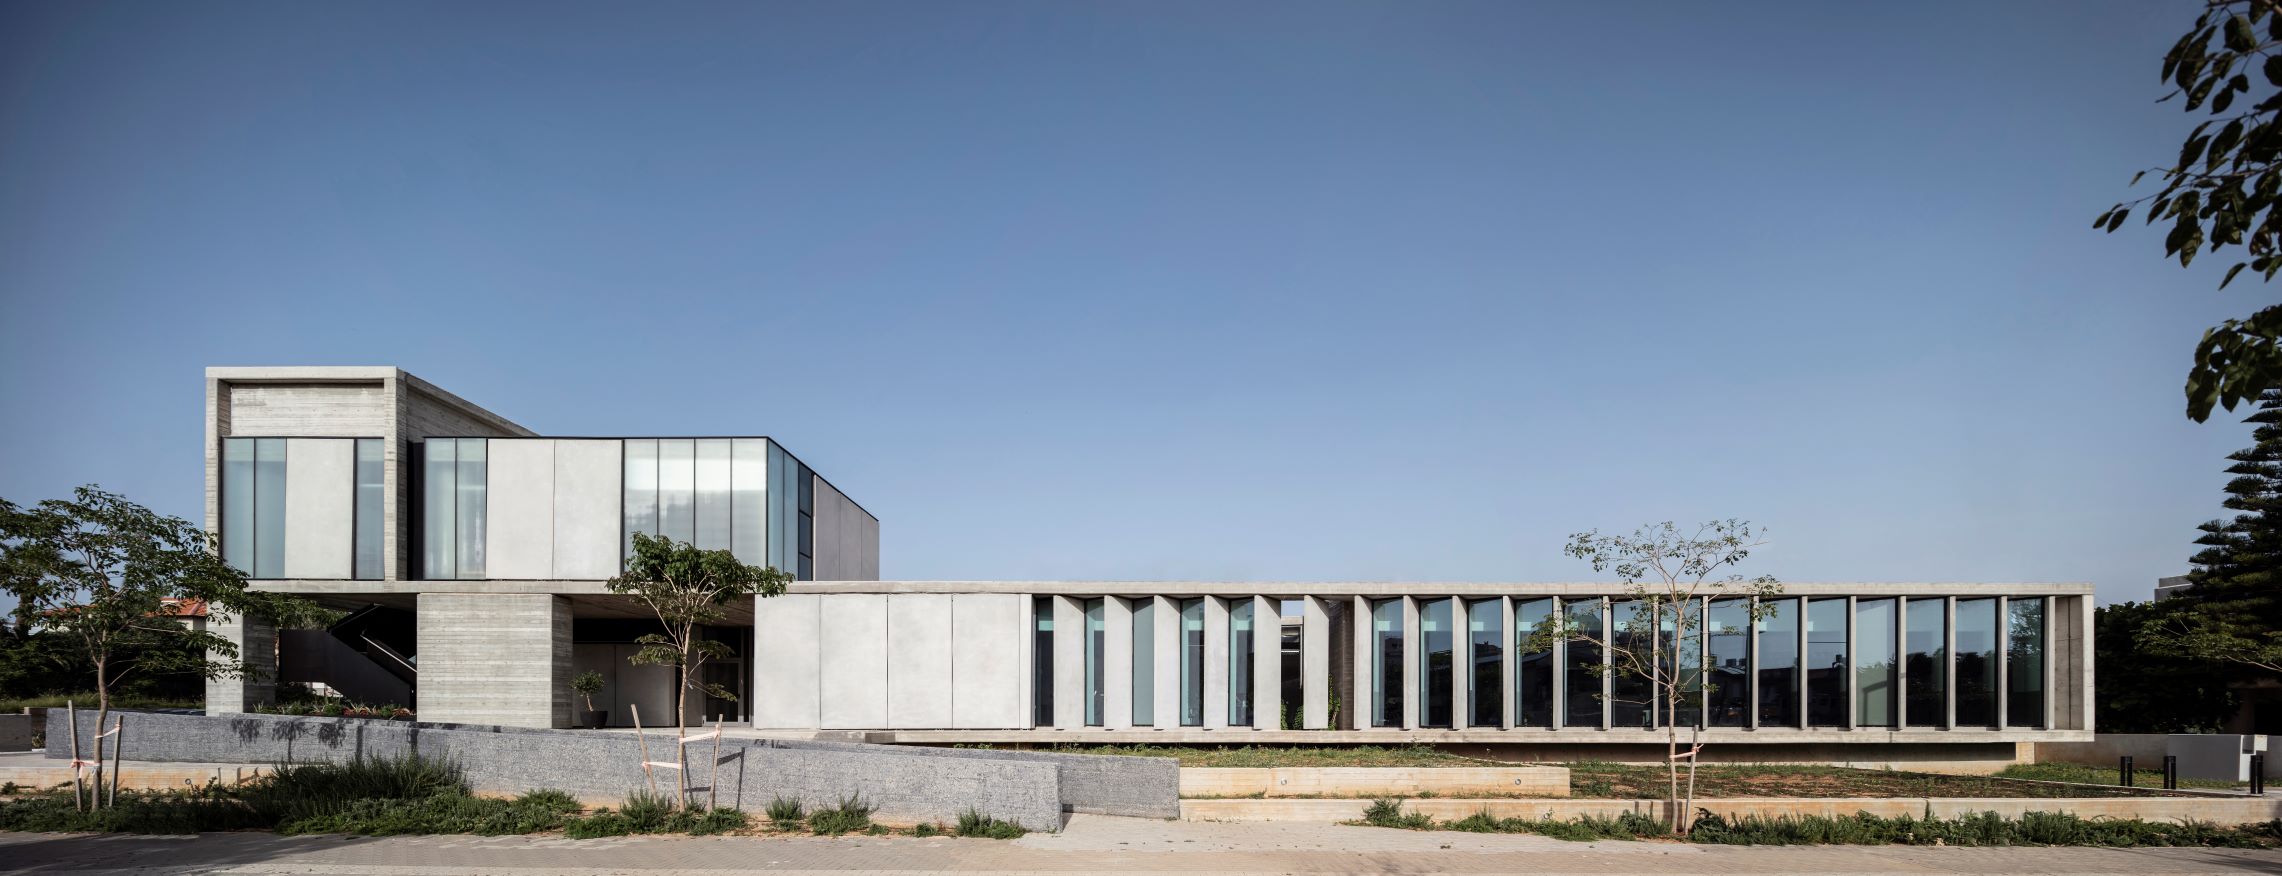 מרכז תאו זכה במקום הראשון בתחרות פרויקט השנה של כתב העת אדריכלות ישראלית בשיתוף האיחוד האירופי